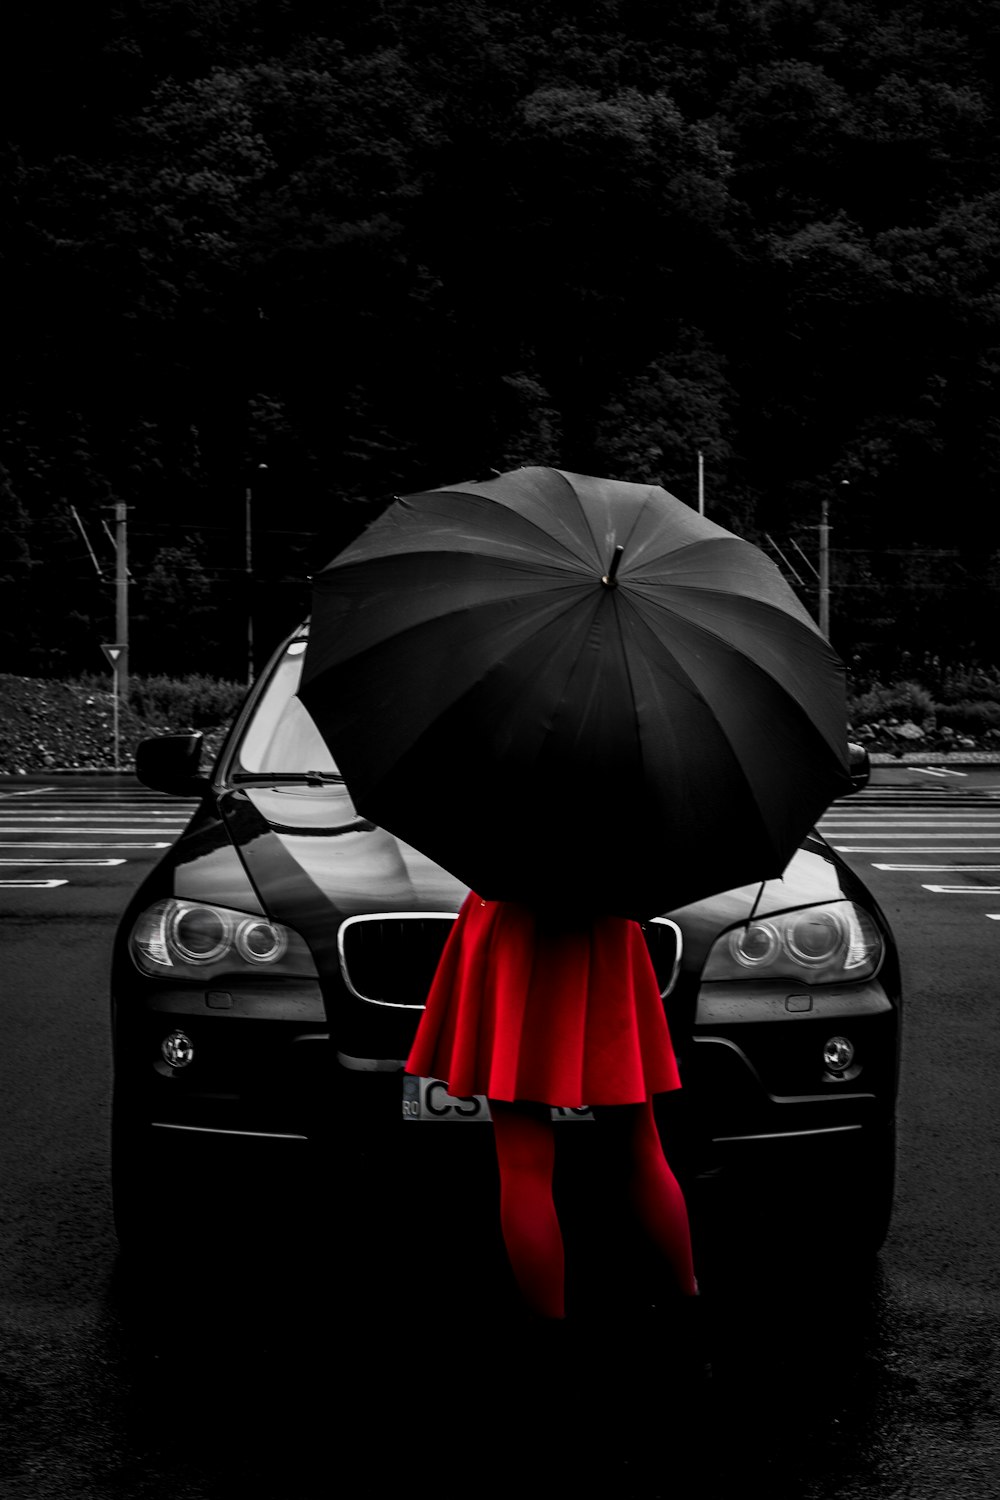 Frau trägt rotes Schlagkleid unter schwarzem Regenschirm, während sie vor dem Fahrzeug steht